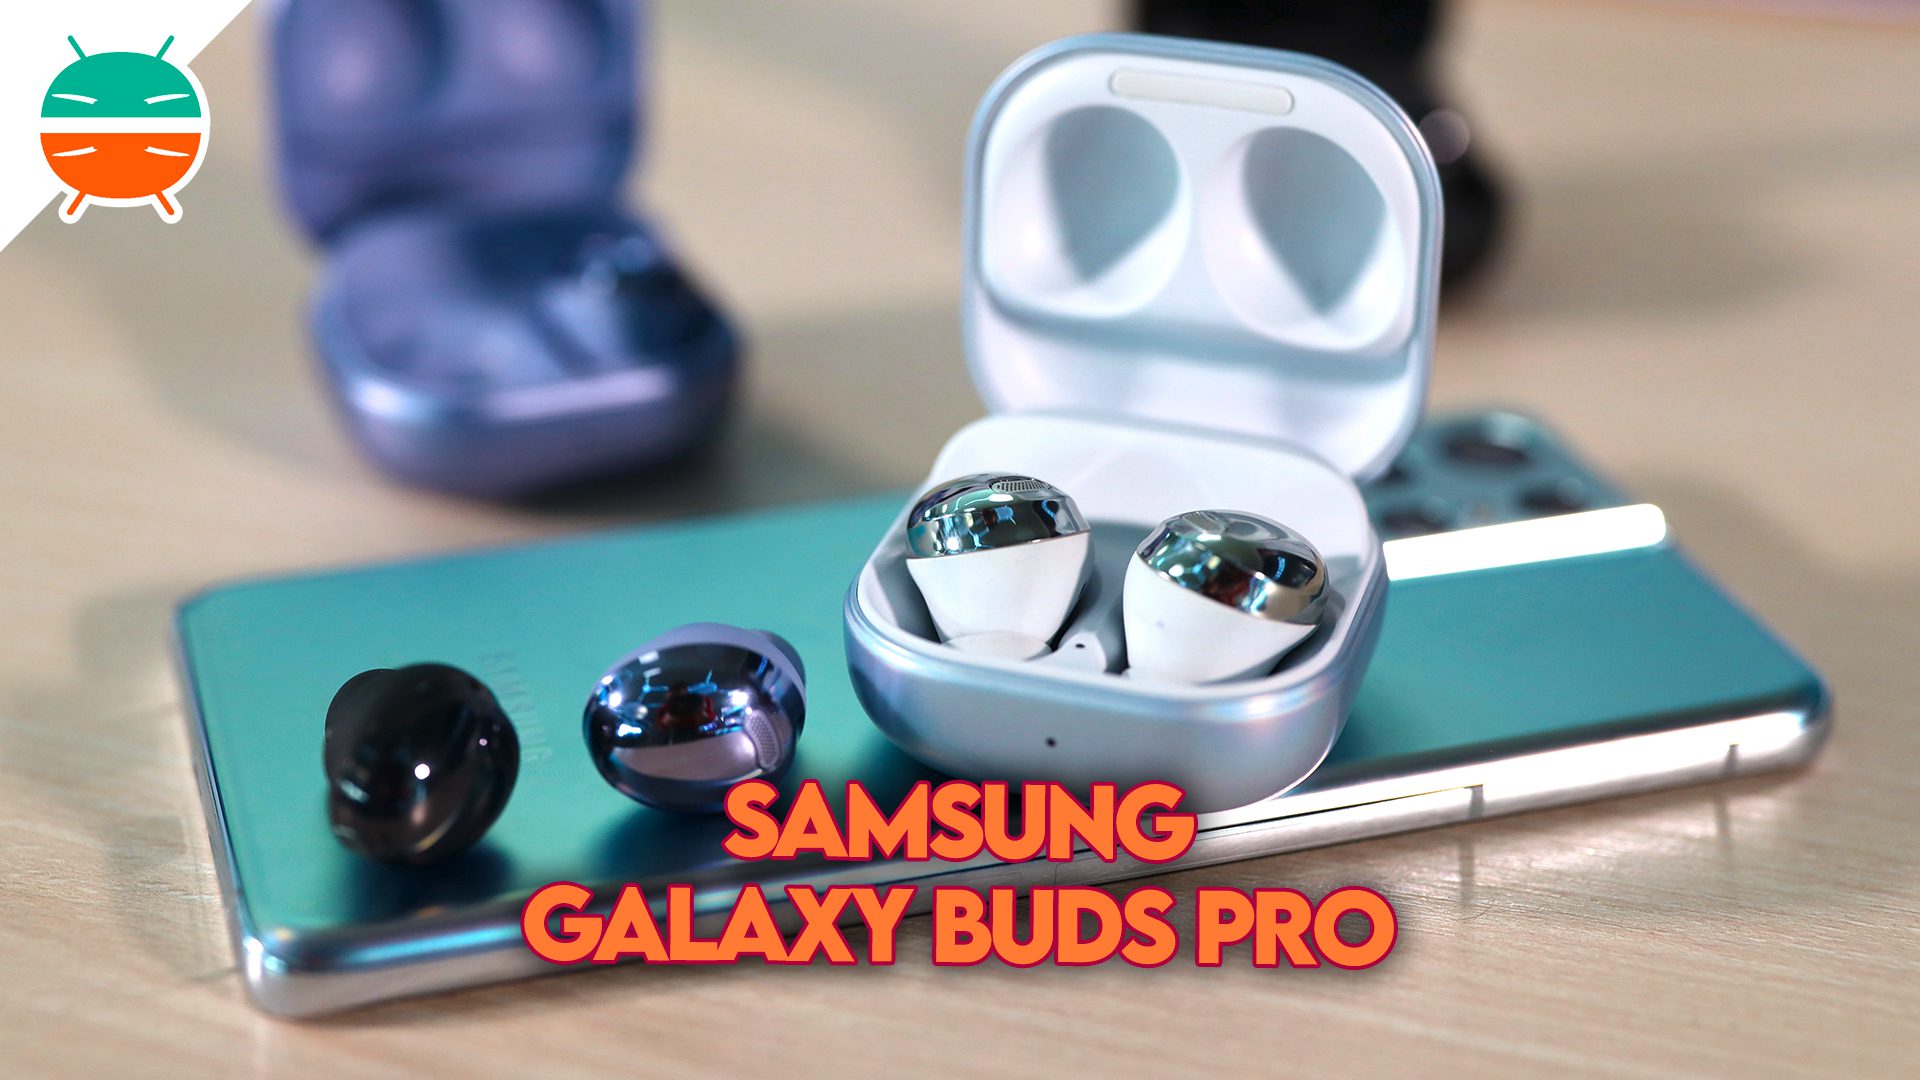 Officiell Galaxy Buds Pro i Italien: Samsung höjer nivån på mobilt ljud